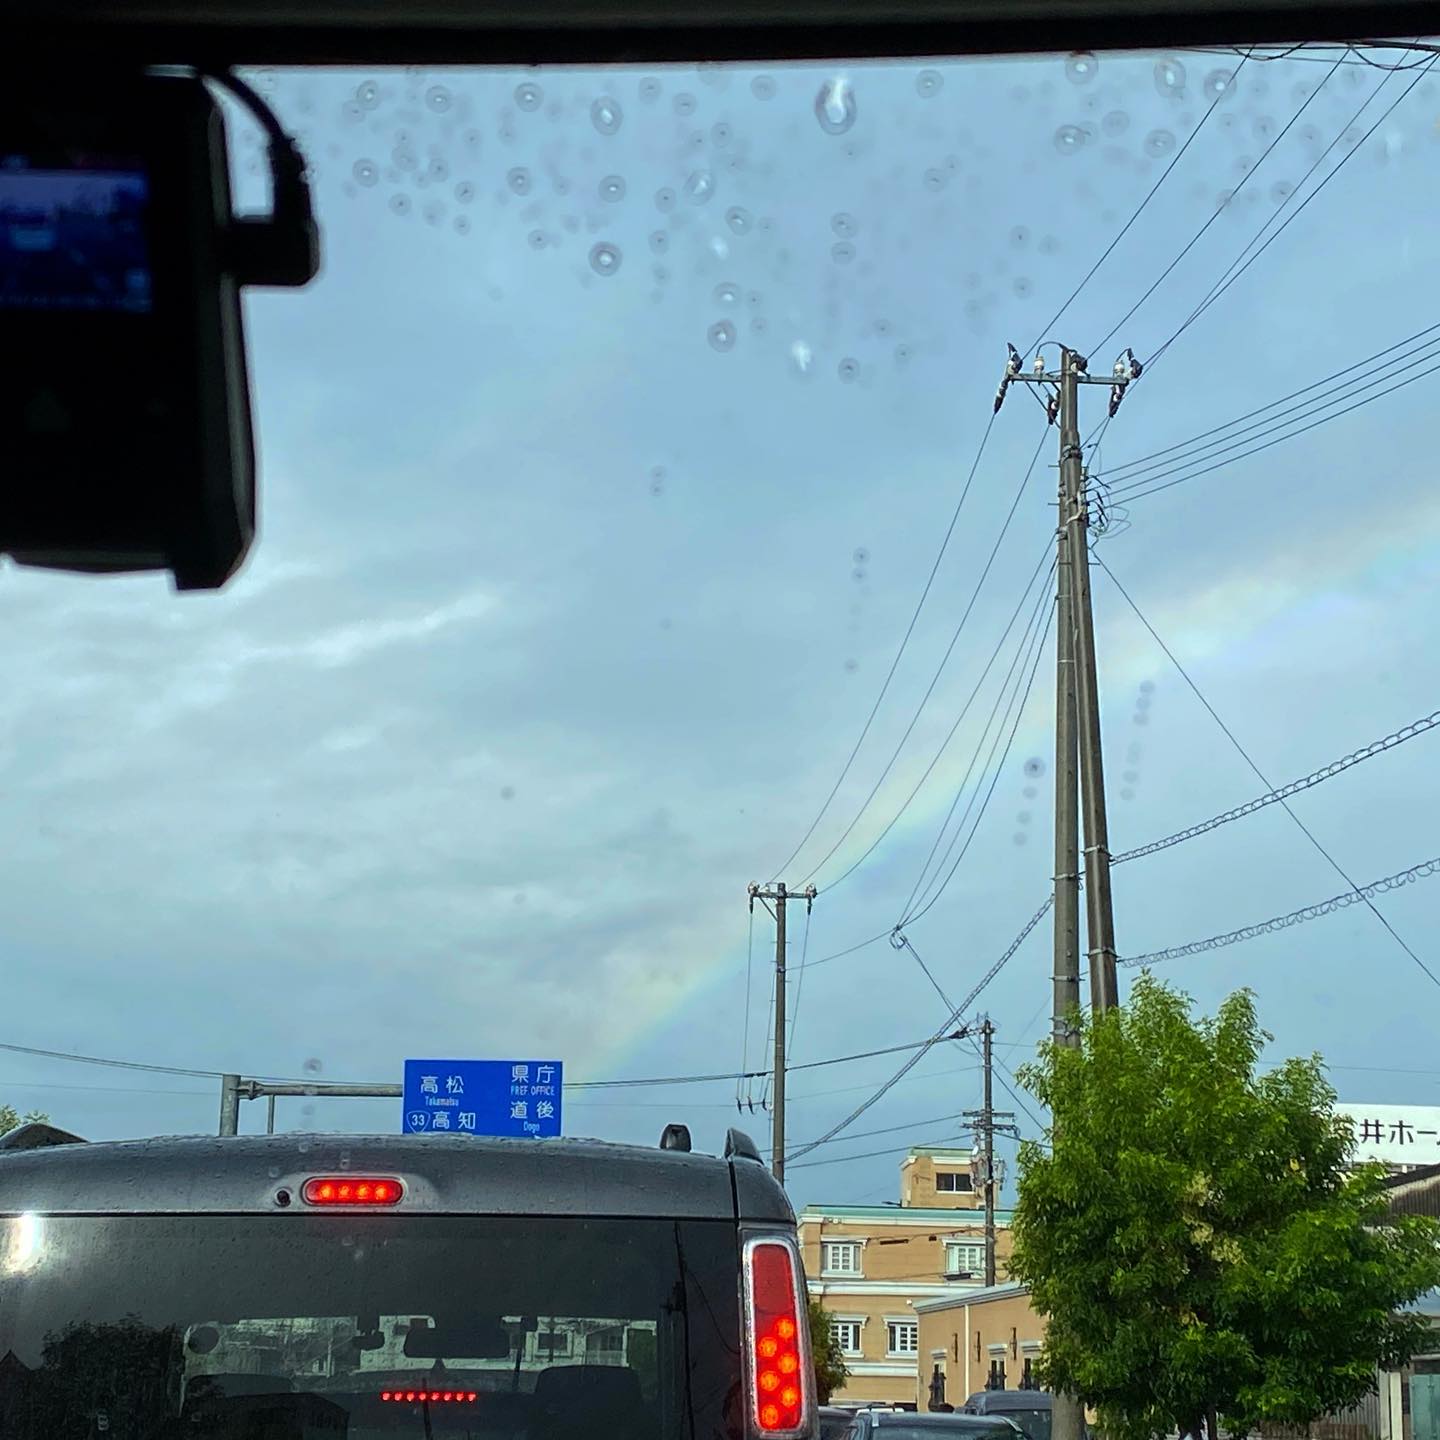 出勤途中、信号待ちの最中に虹が出たー♪ちょっといいこと、ありそな予感。でも一瞬で消えちゃったよ、残念。